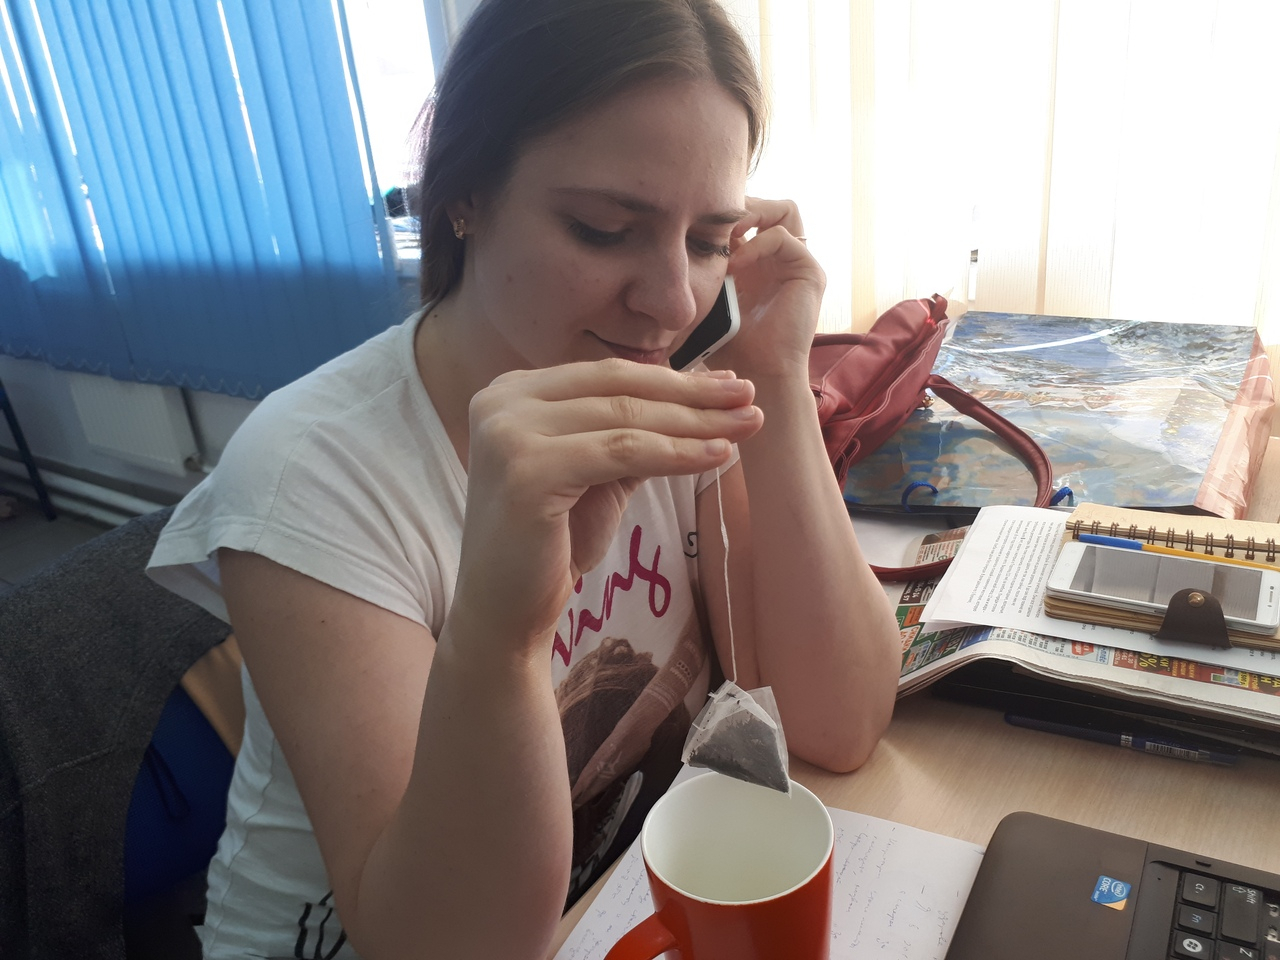 Медленная смерть в пакетиках: об опасном чае рассказал врач из Ярославля